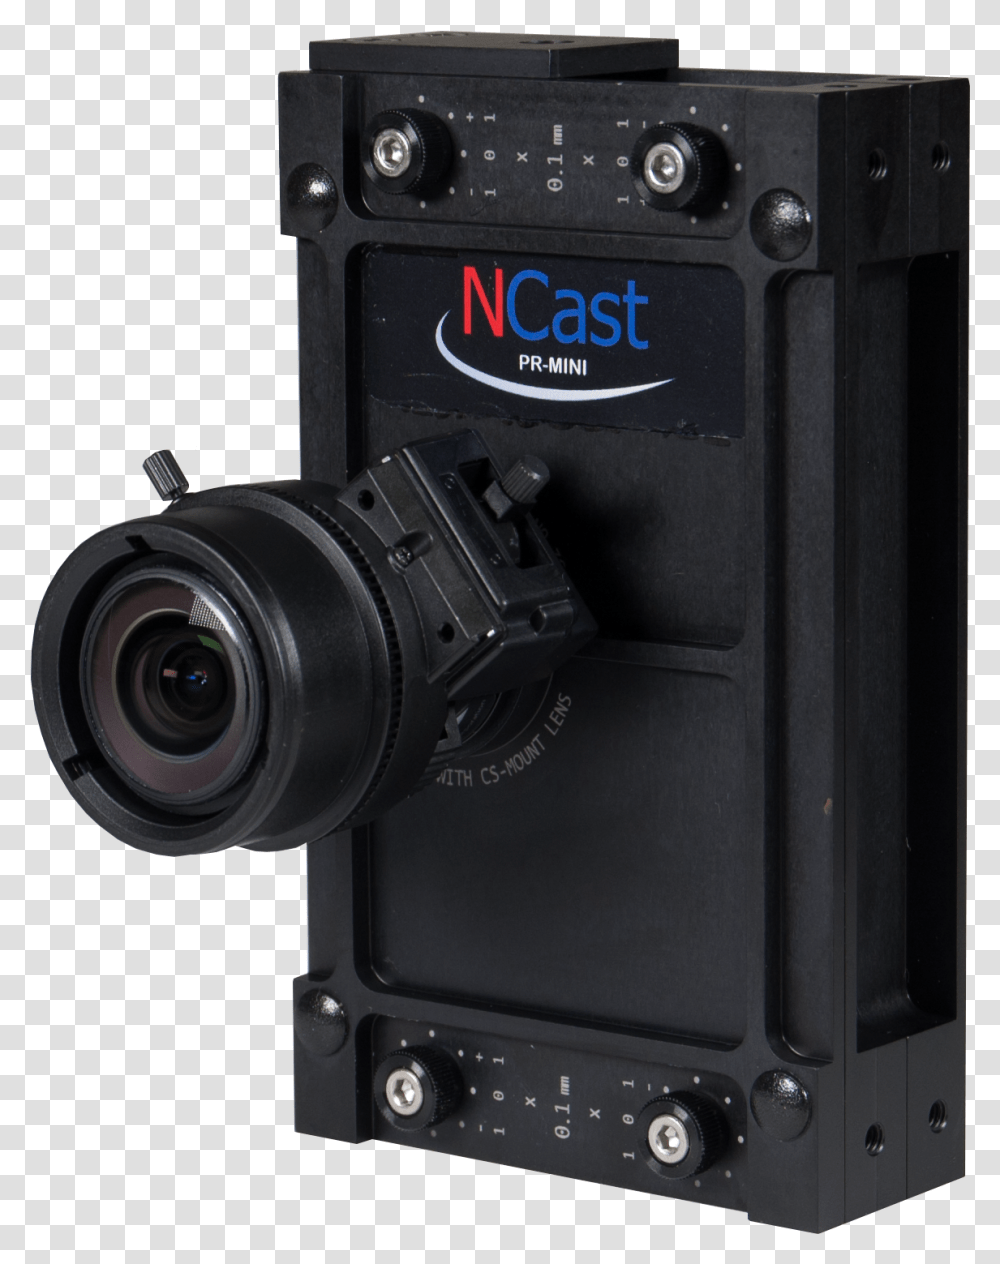 Presentation Recorder Mini Single Lens Reflex Camera, Electronics, Video Camera, Digital Camera Transparent Png